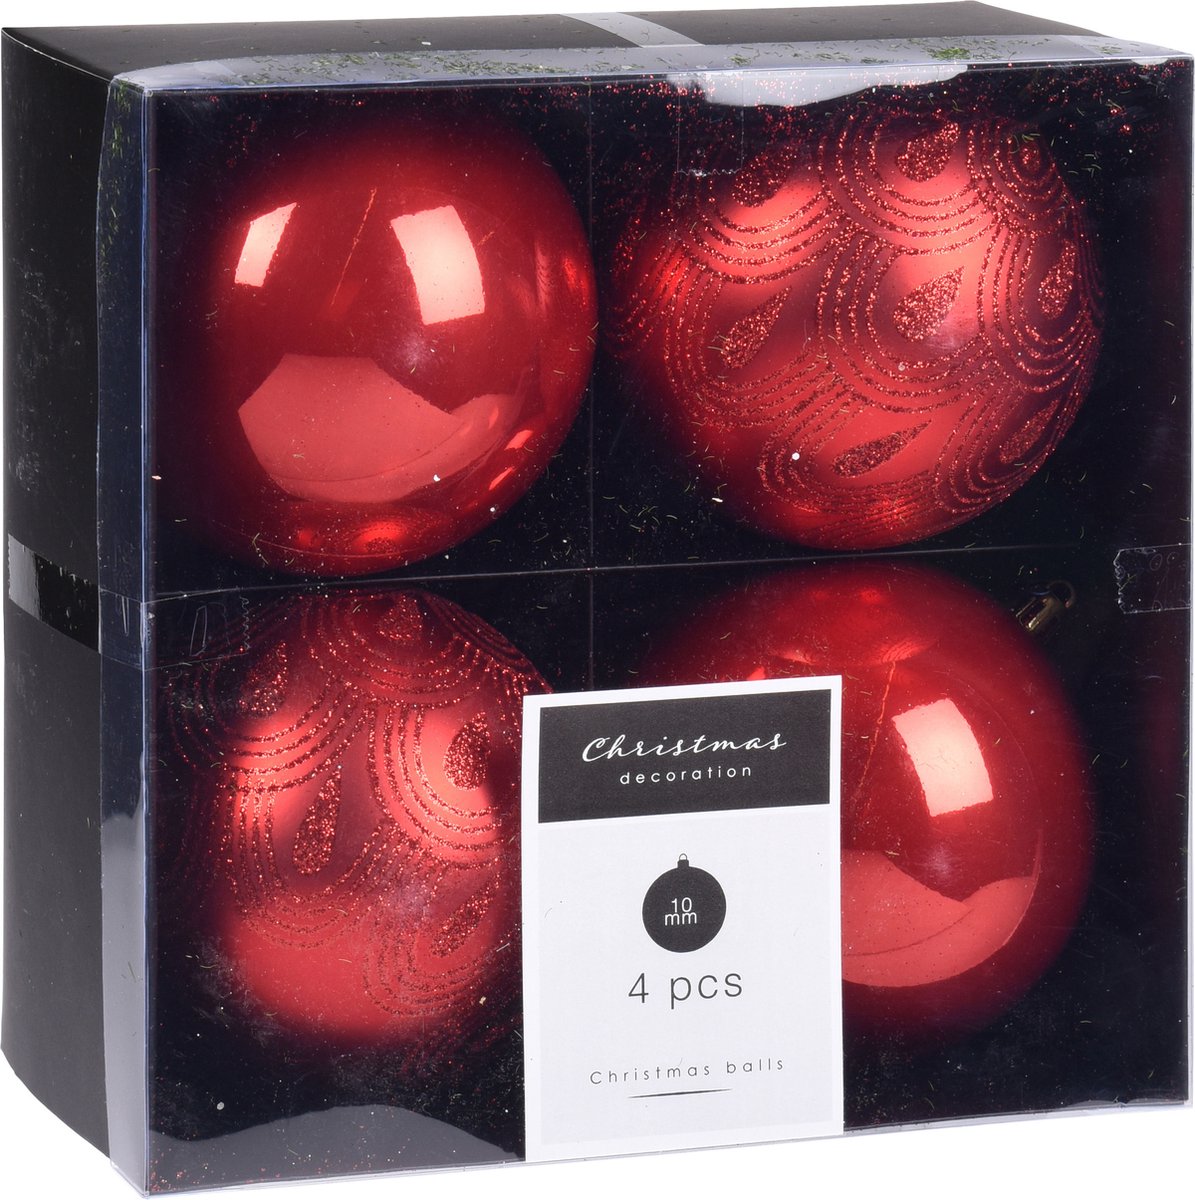 8x Kerstboomversiering luxe kunststof kerstballen rood 10 cm - Kerstversiering/kerstdecoratie rood